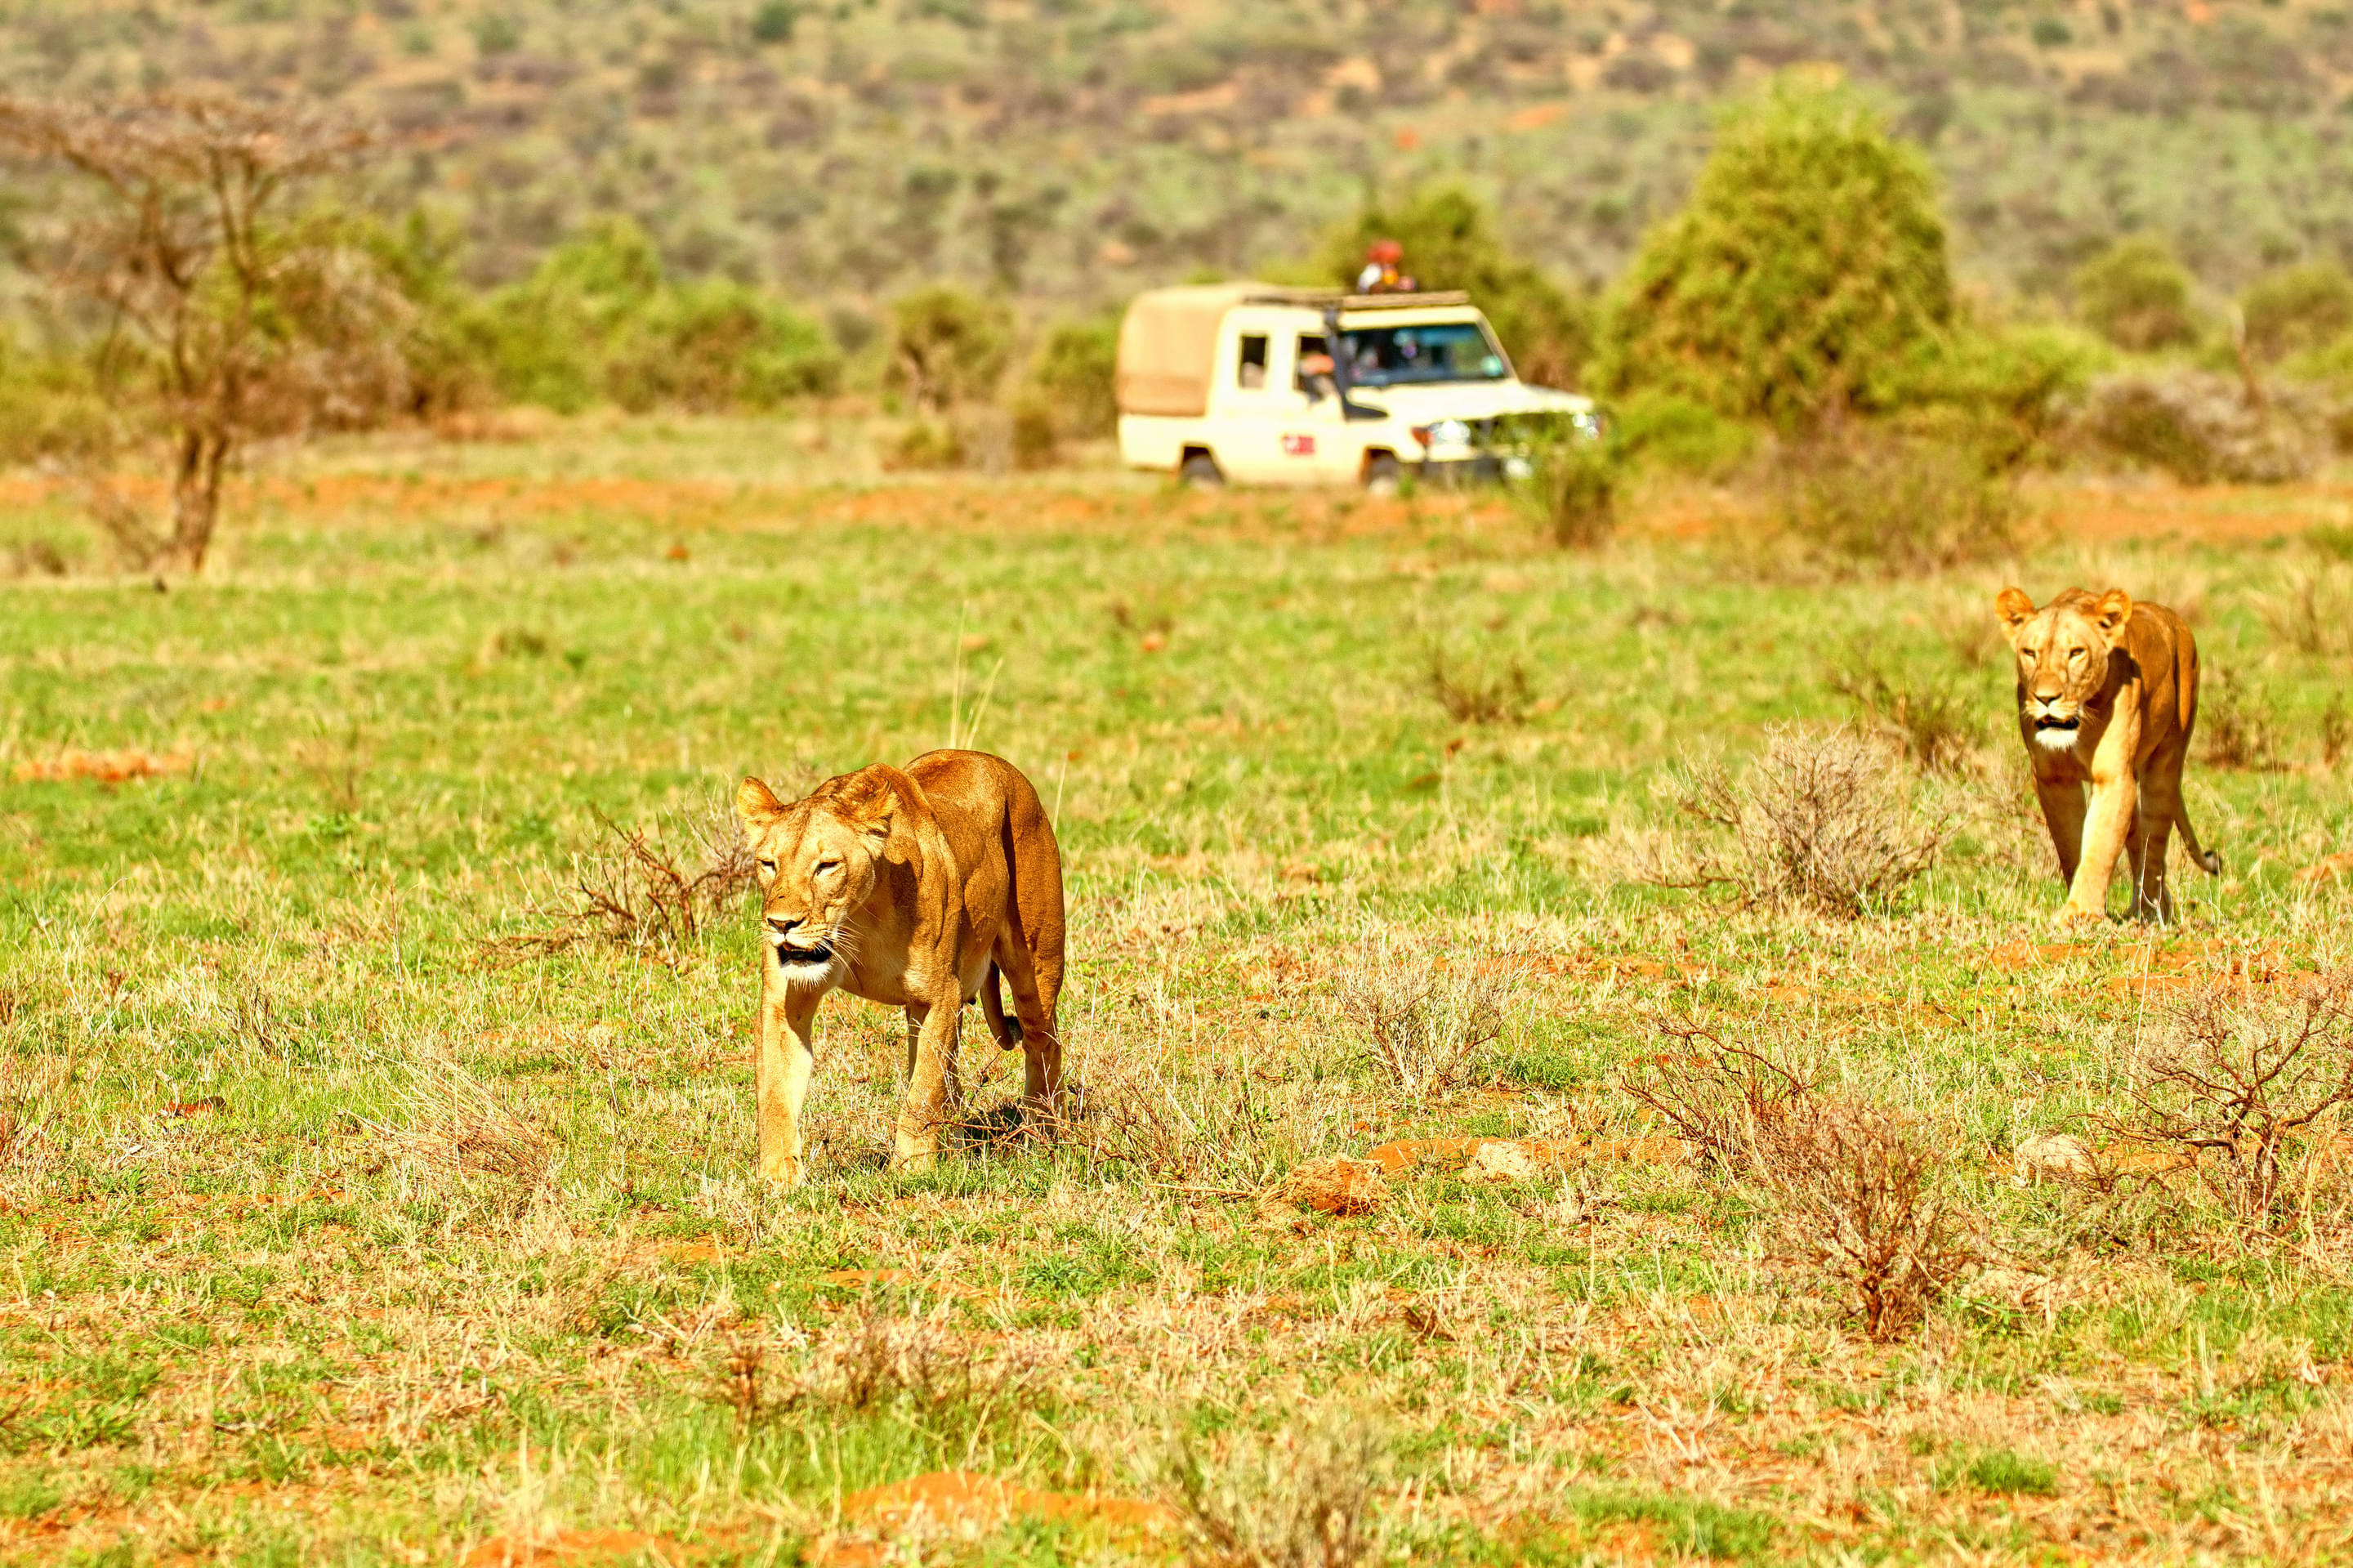 Samburu National Reserve Overview